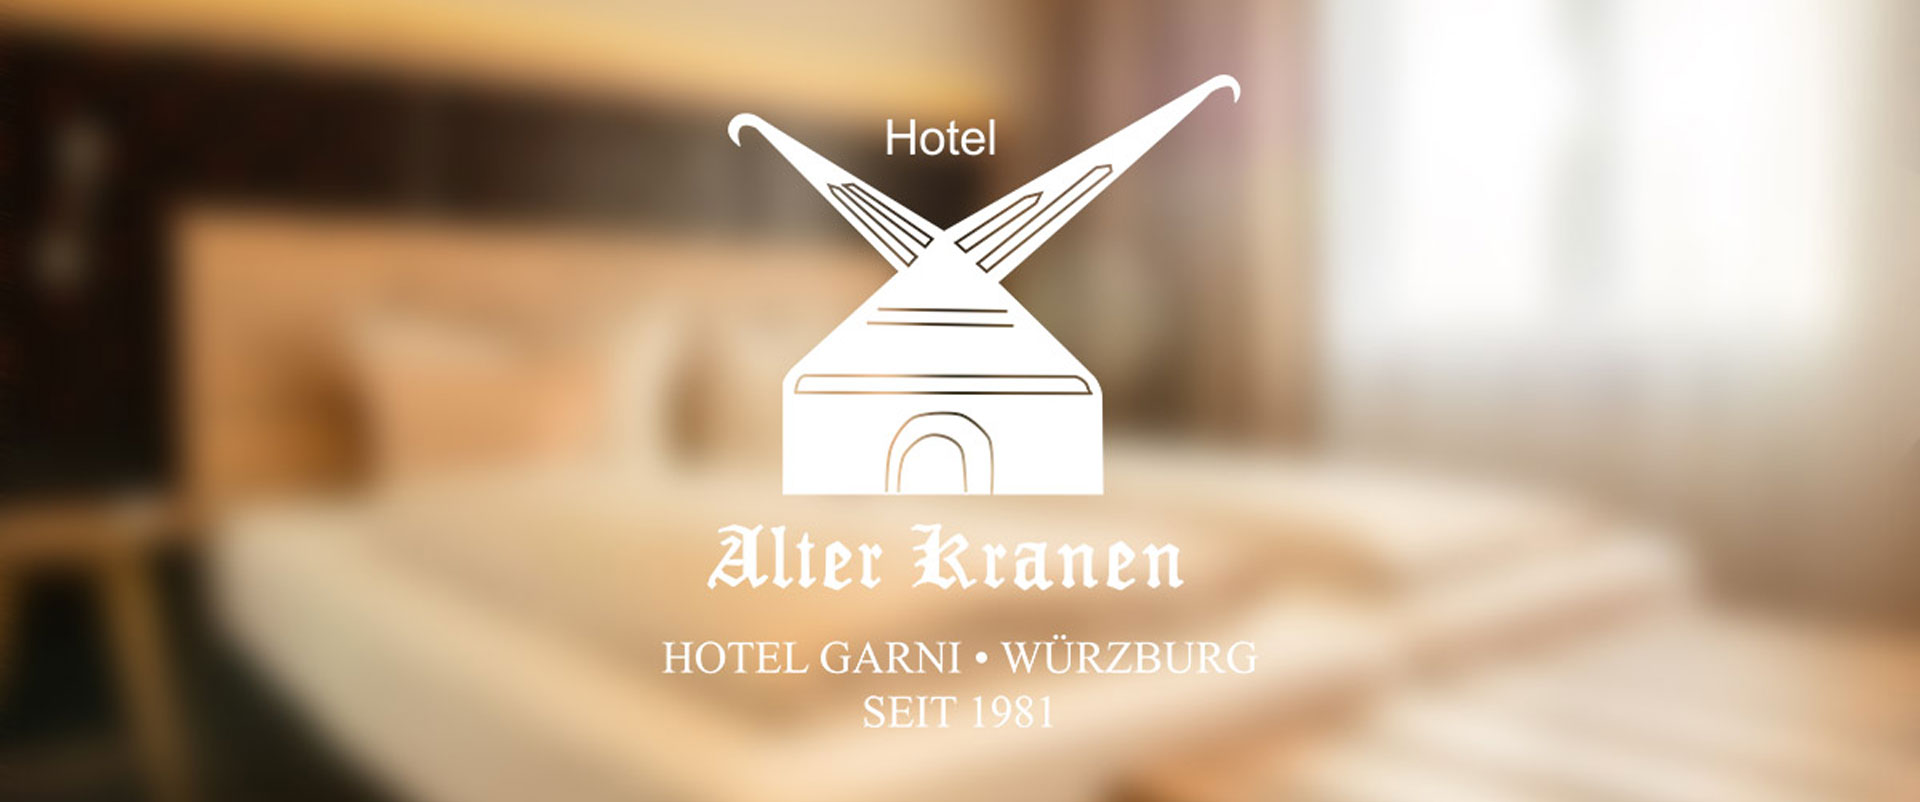 Neues Logo Hotel alter Kranen Würzburg